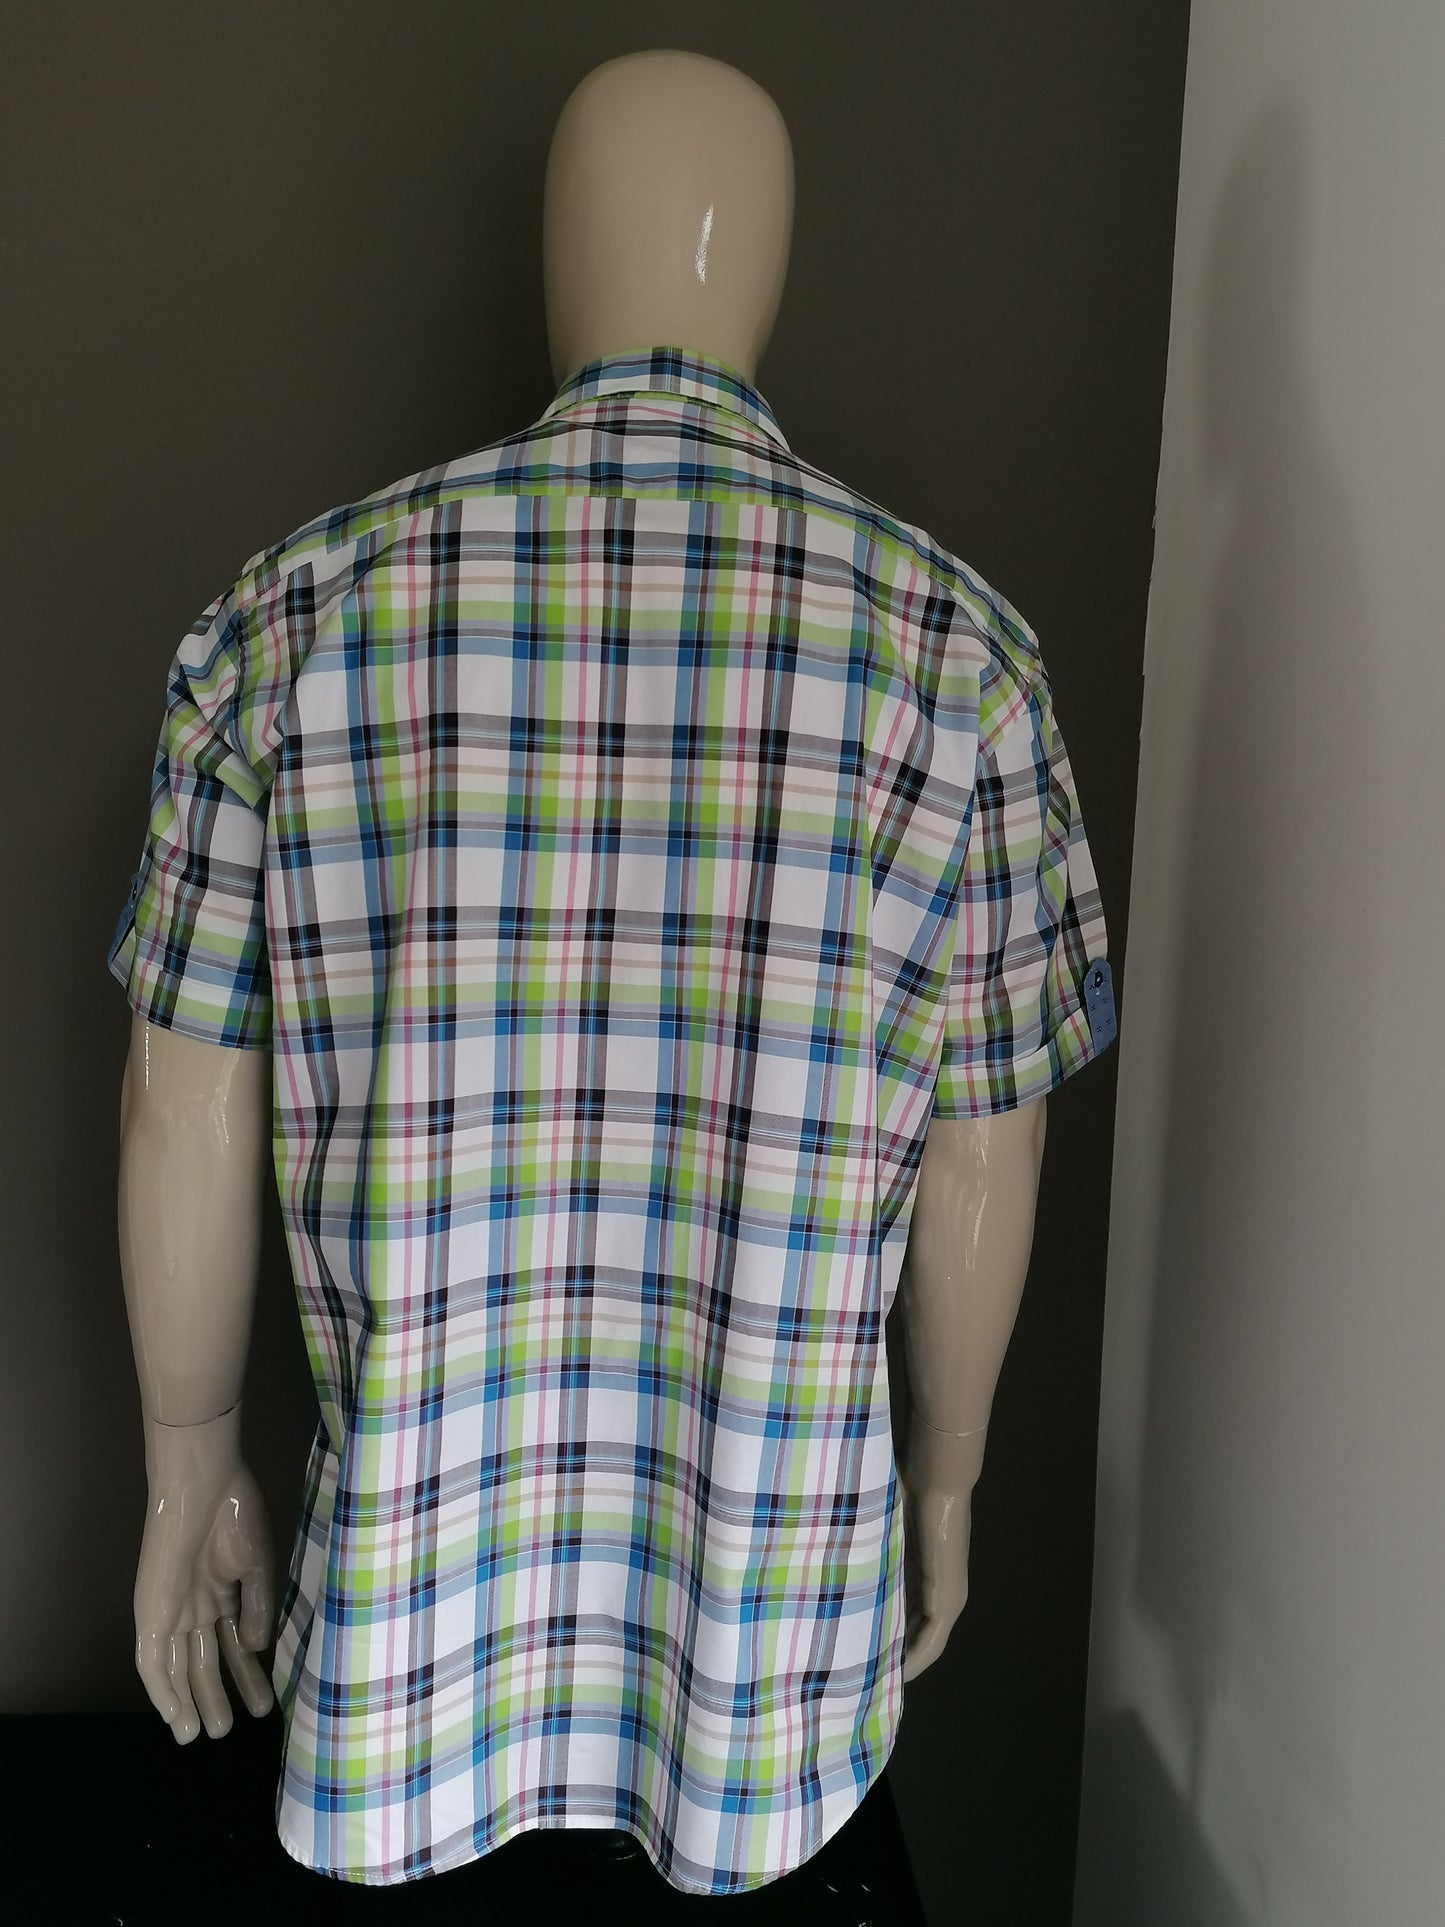 Blumfontain Shirt Short Sleeve. Rouge brun vert bleu vérifié. Taille xxl / 2xl.